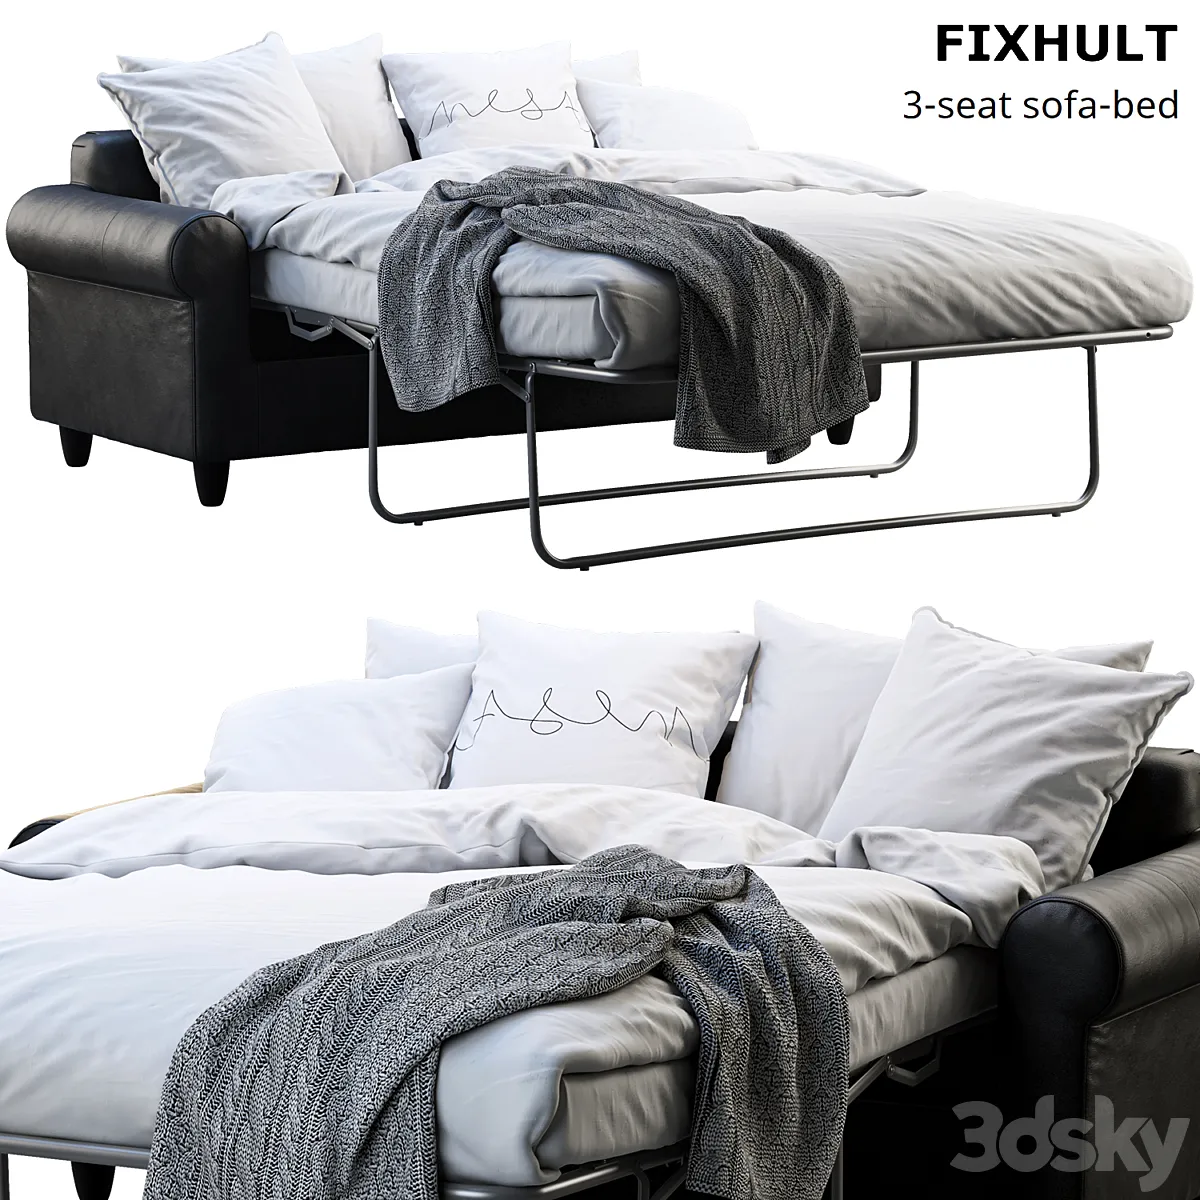 دانلود 3dsky – Ikea Fixhult sofa-bed